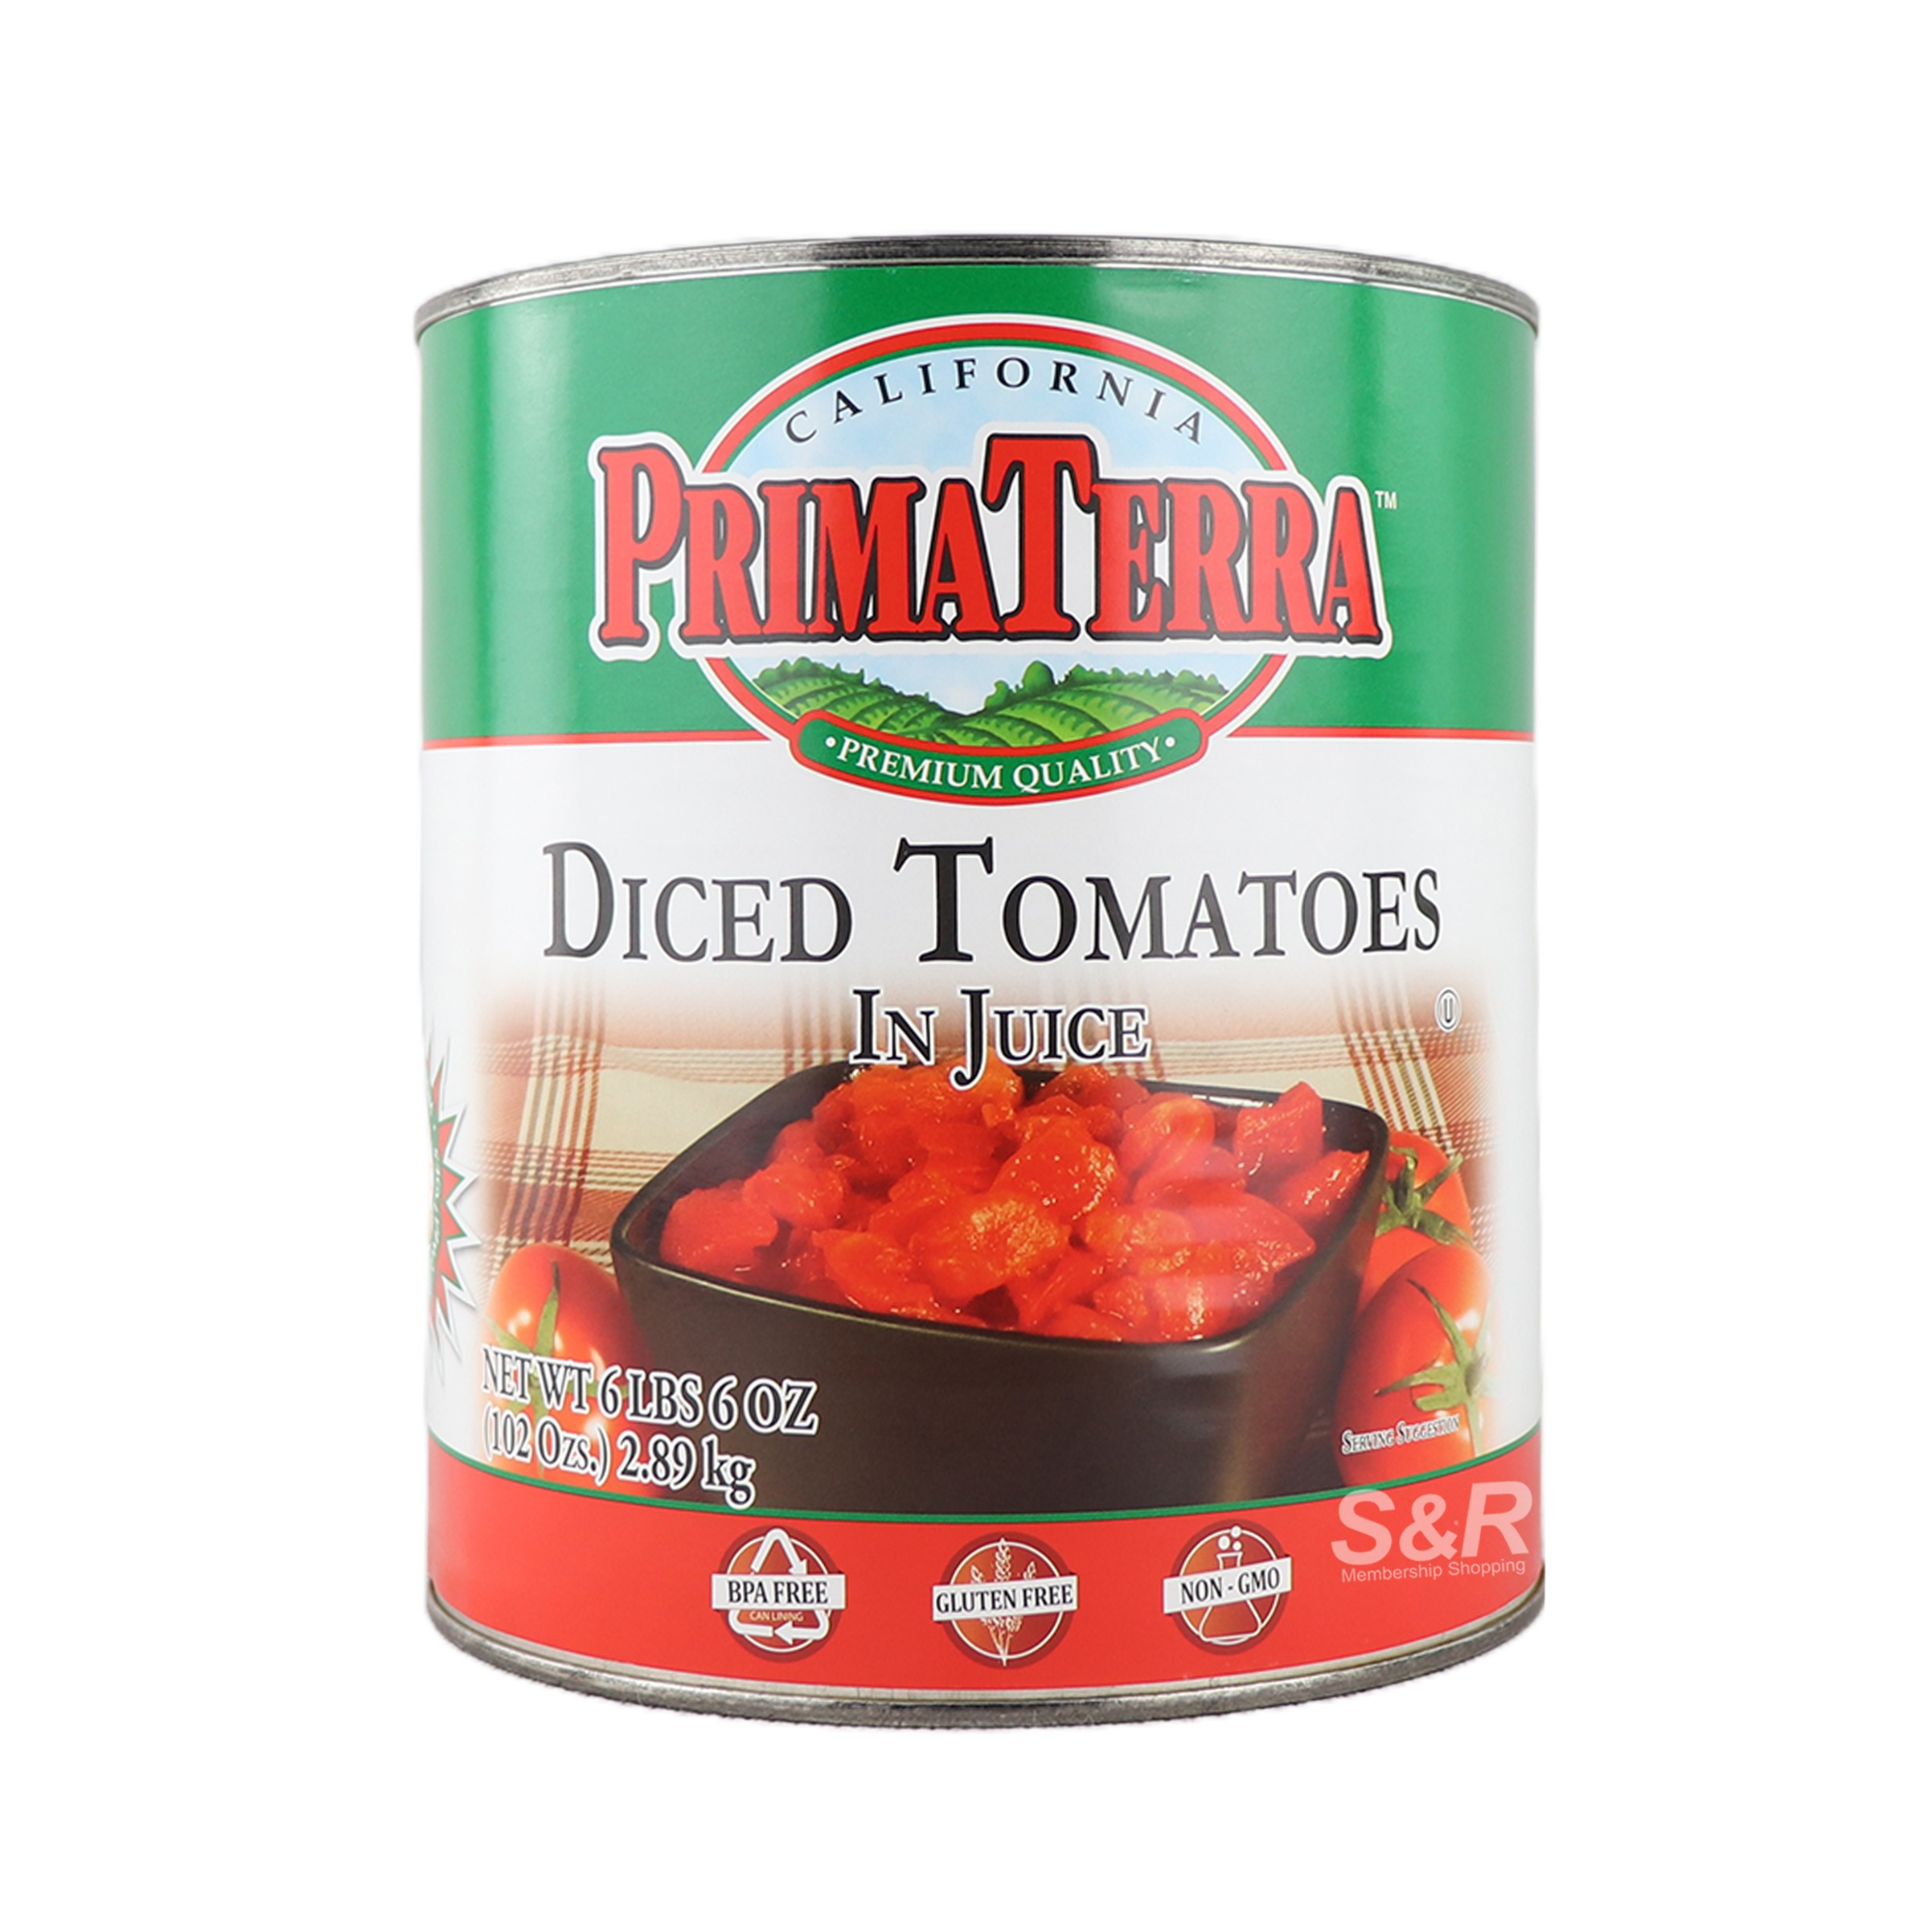 Prima Terra Diced Tomatoes In Juice 2.89kg